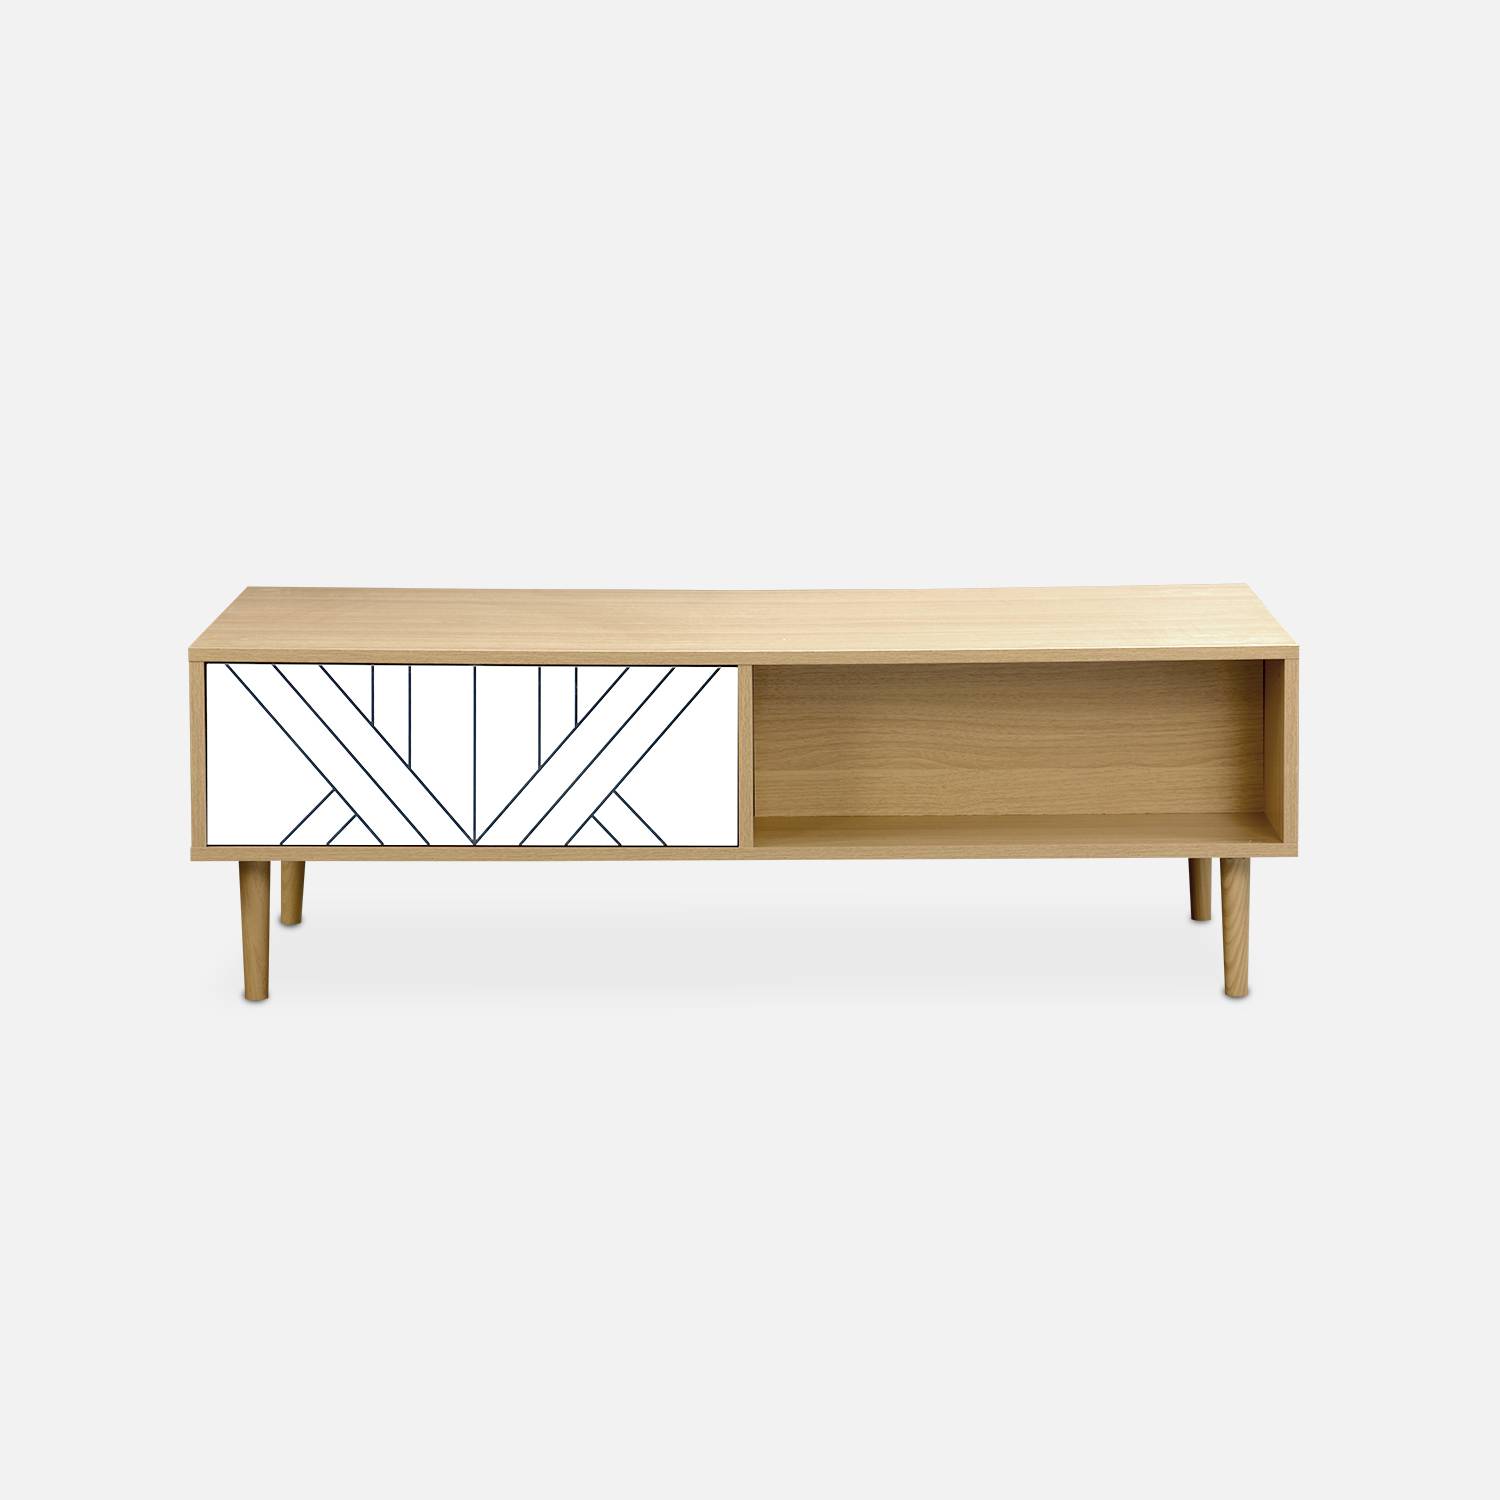 Mesa de centro em madeira e decoração branca - Mika - 2 gavetas, 2 espaços de arrumação, C 120 x L 55 x A 40cm Photo5